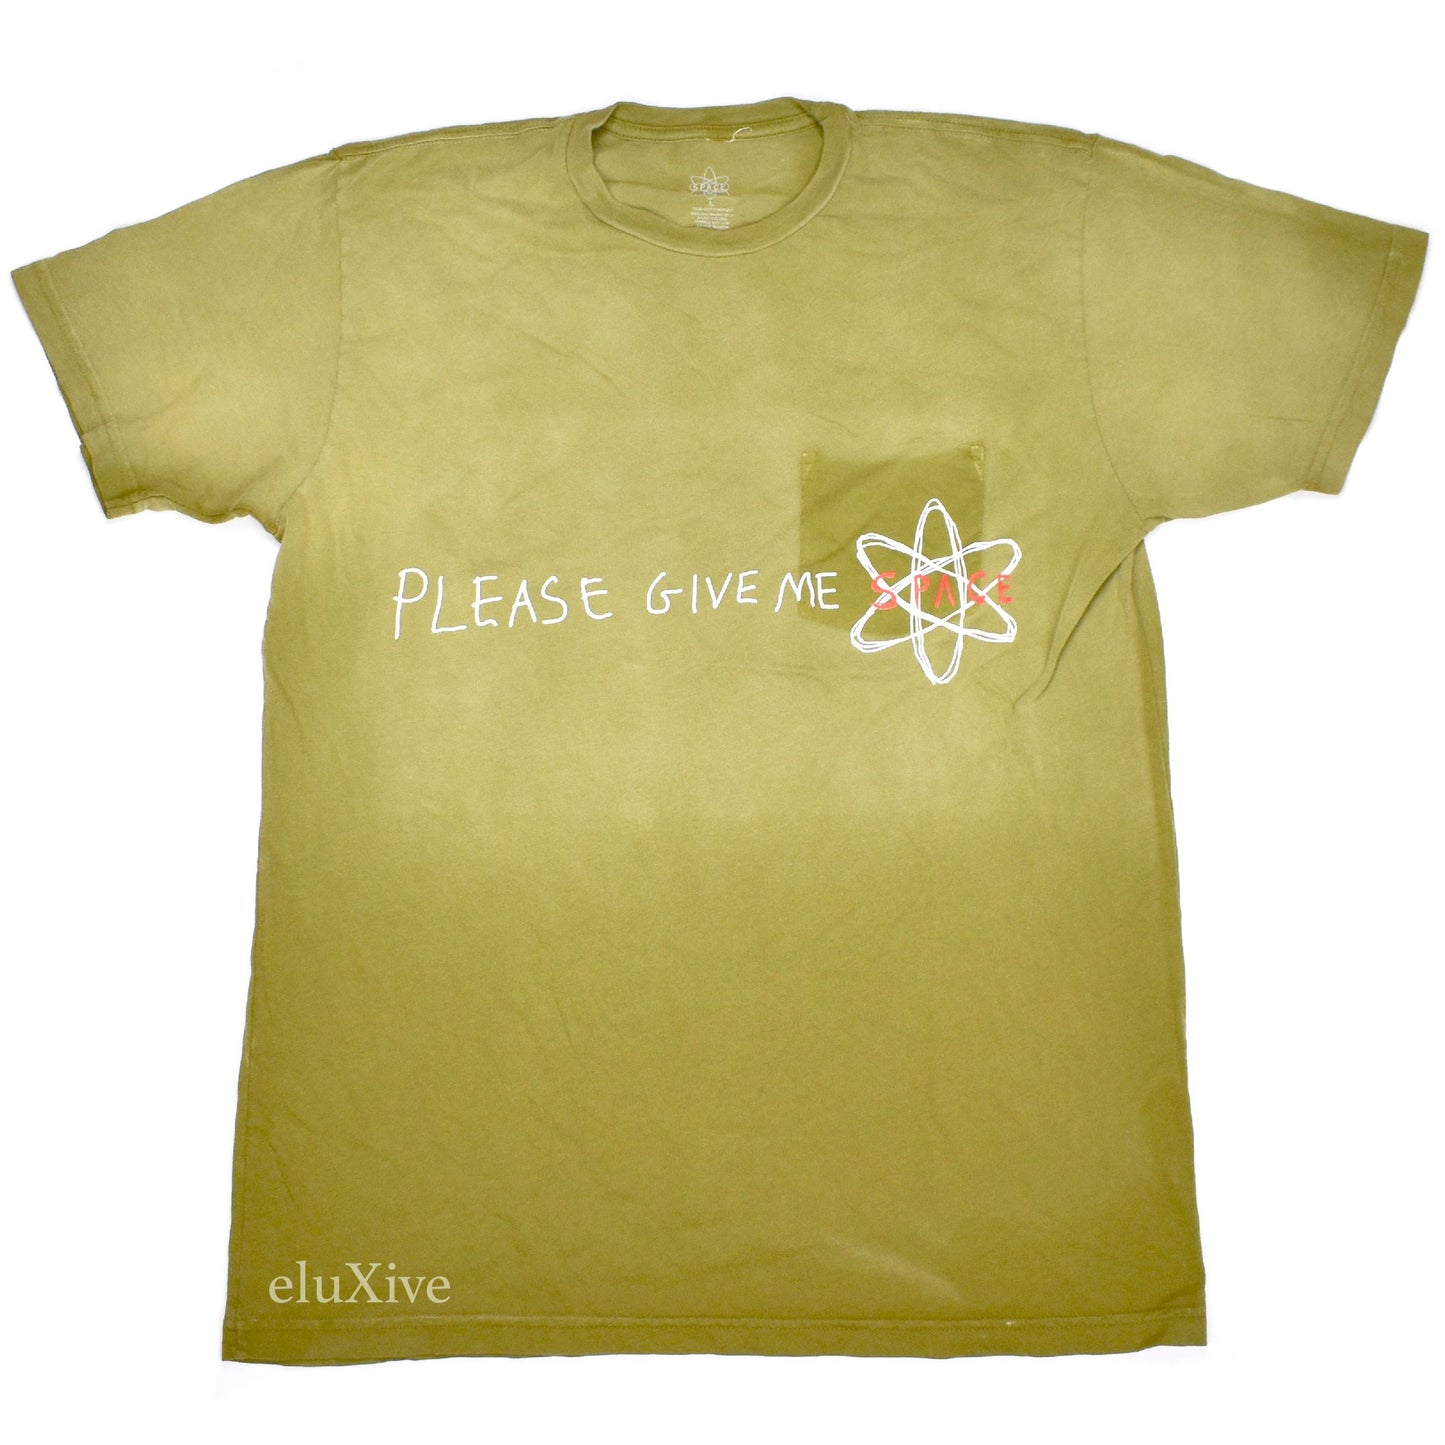 Travis Scott - Space Village Logo T-Shirt (Olive)